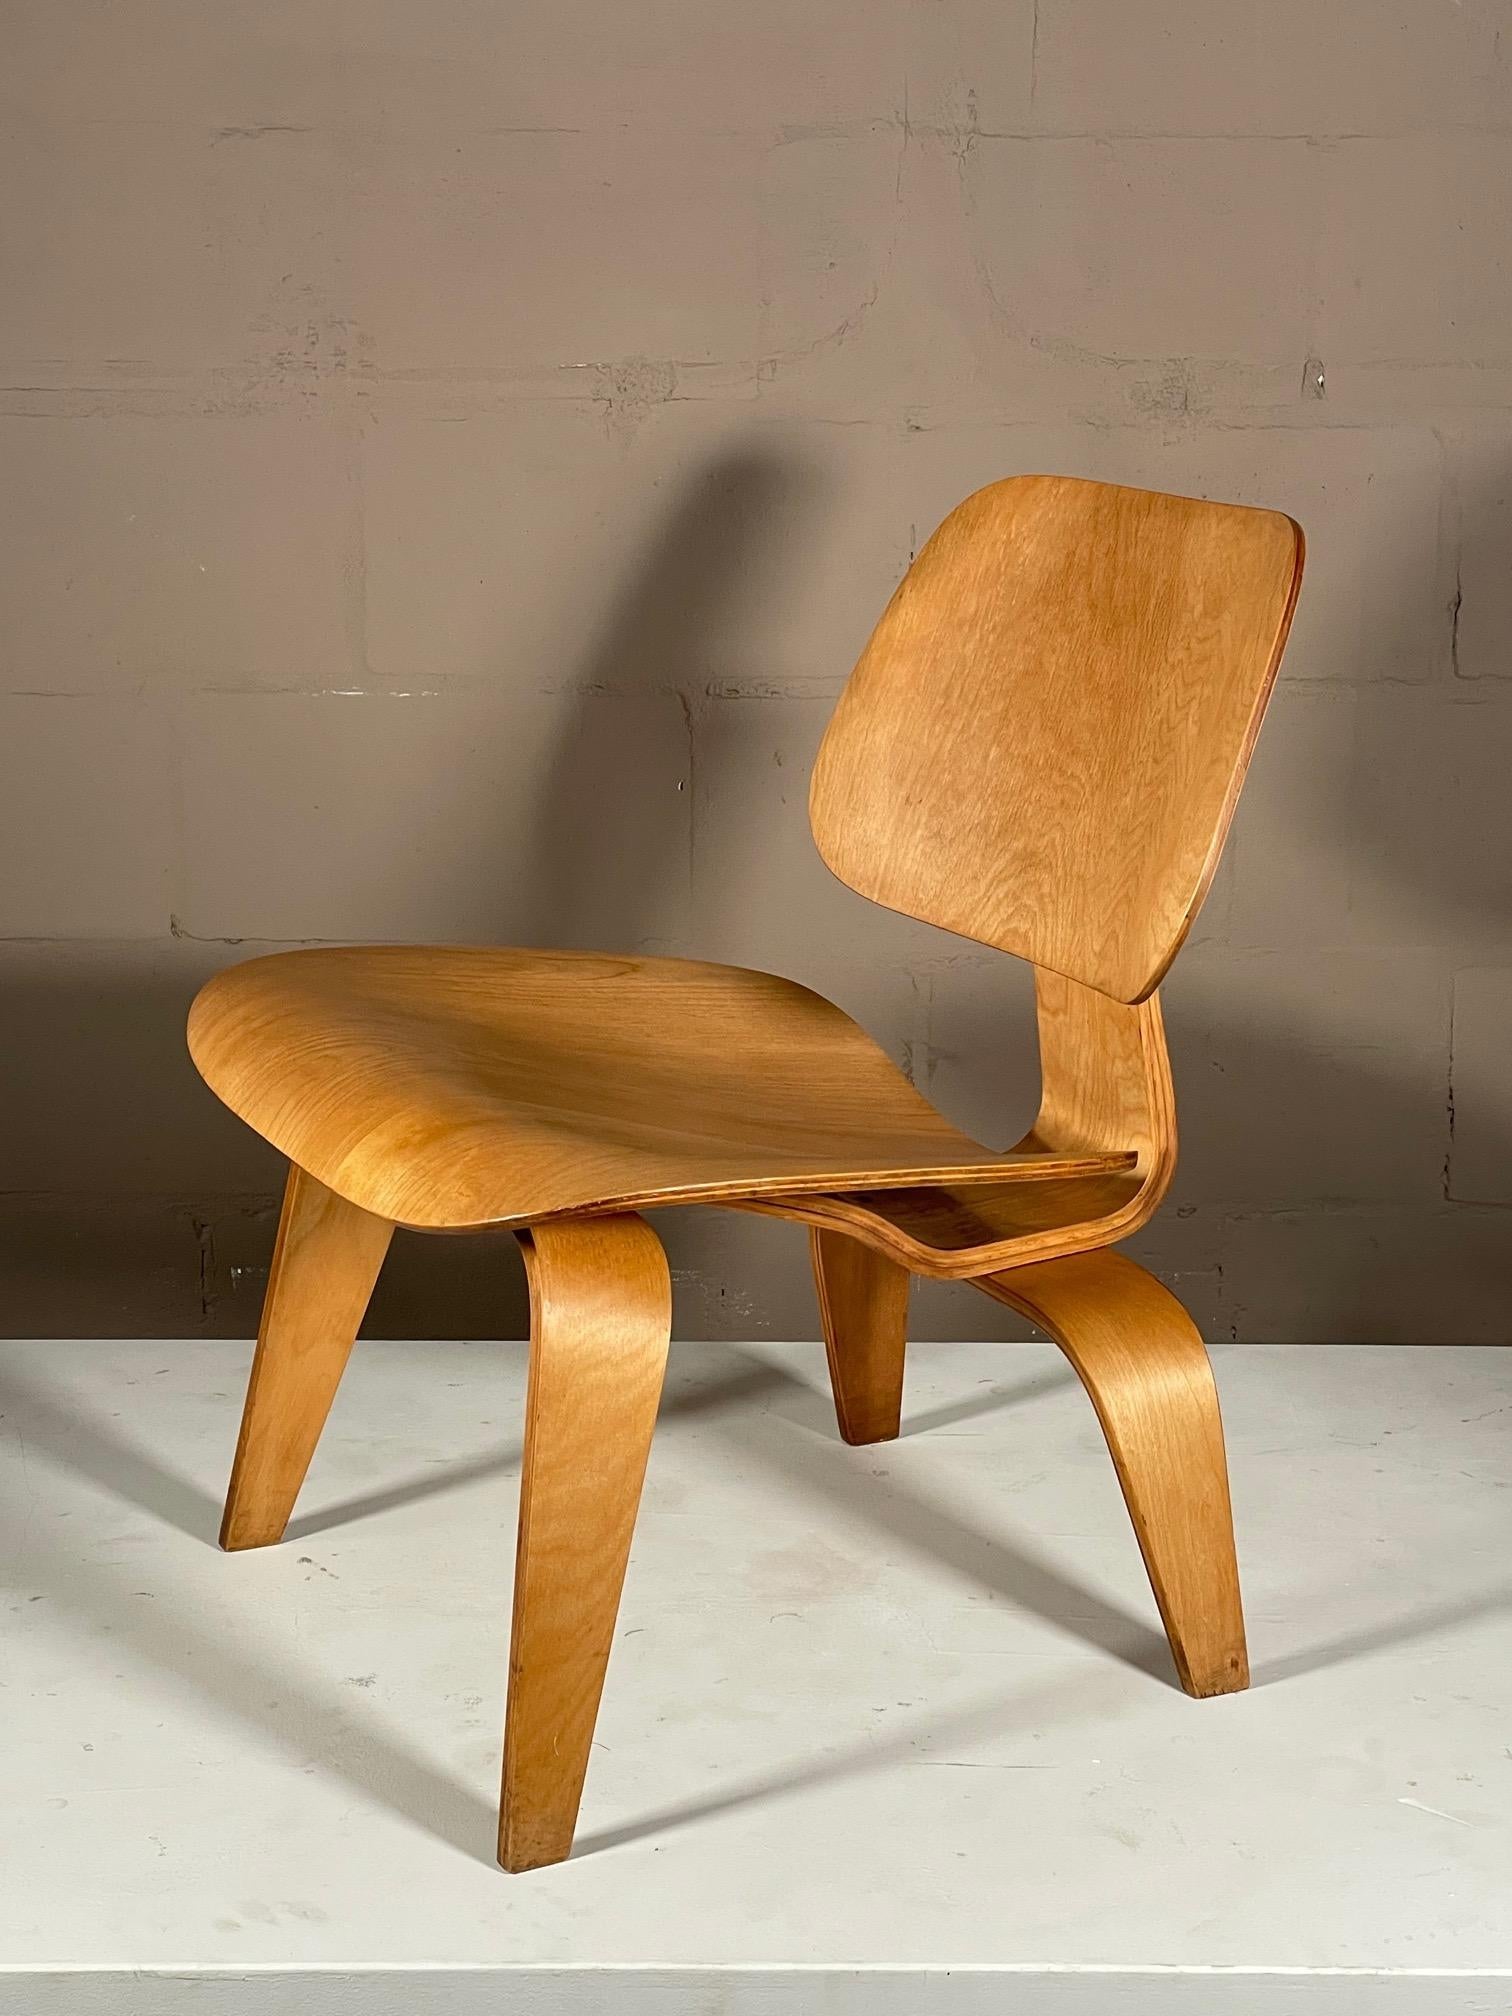 Un excellent exemple de Charles Eames Herman Miller/Evans 1940's LCW (lounge chair wood). Tout est d'origine avec les supports d'amortisseurs, les vis et le Label d'origine intacts.